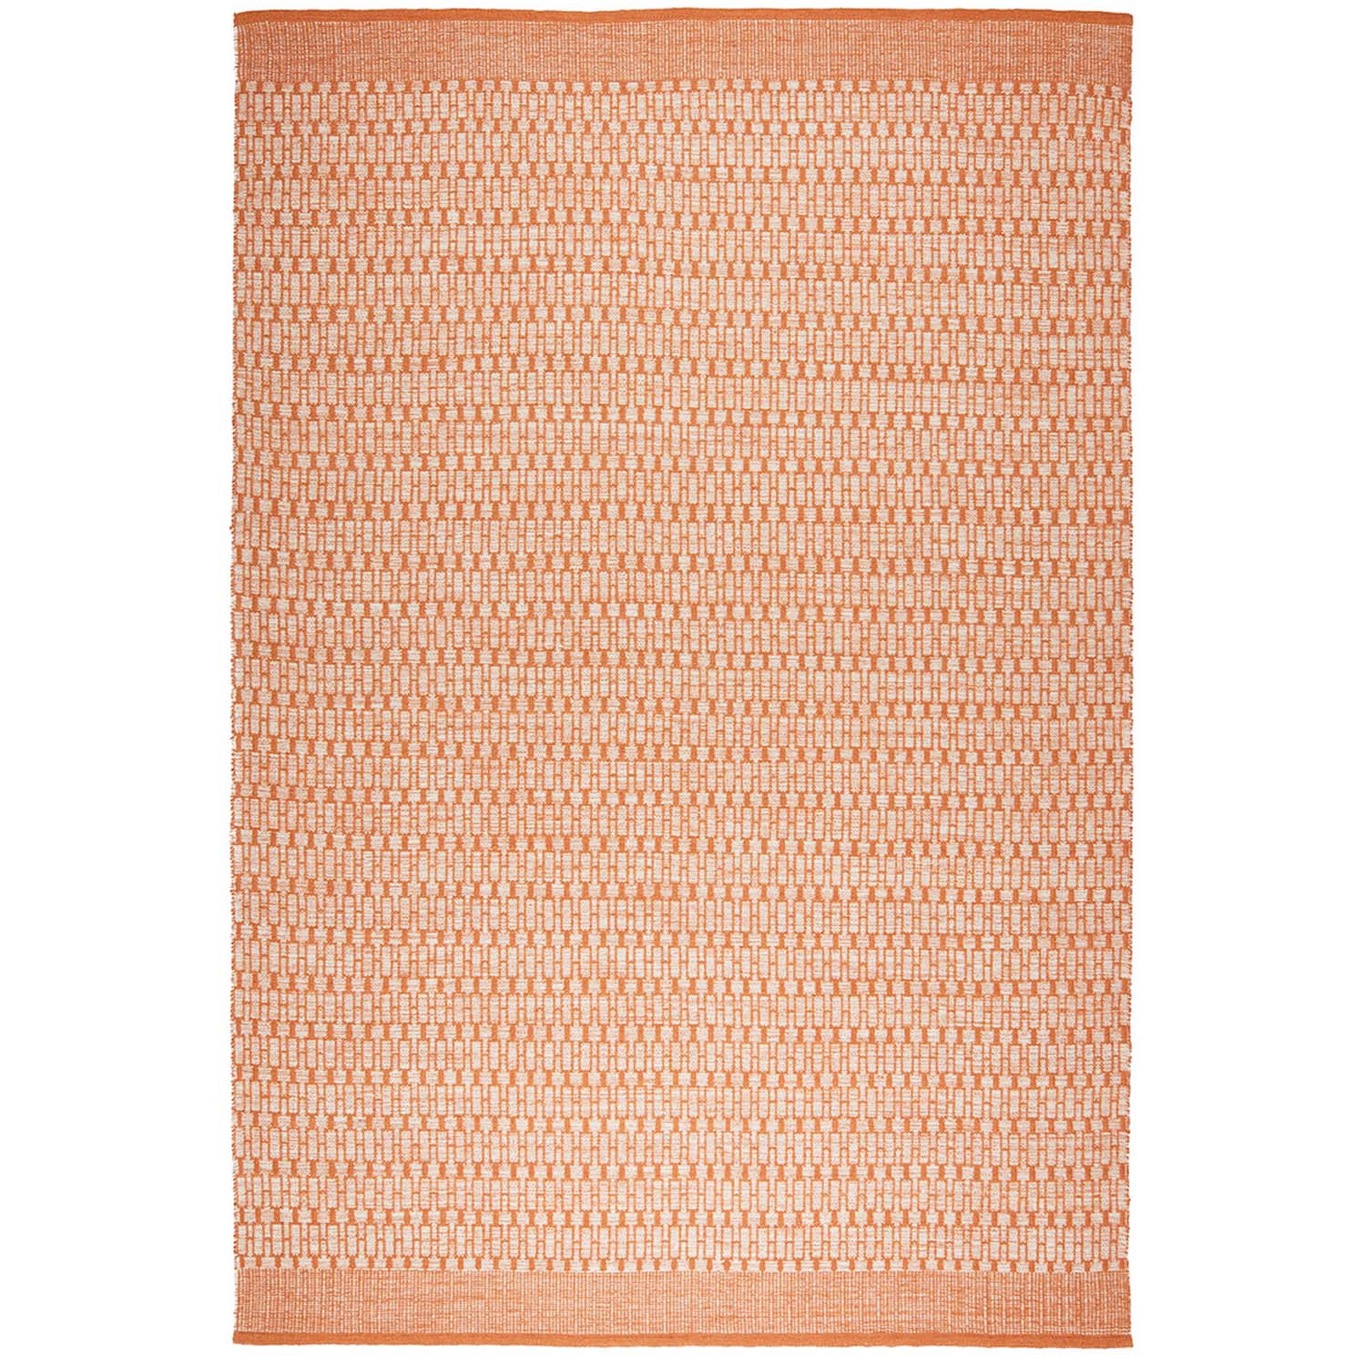 Mahi Ullmatta Off-white / Orange, 200x300 cm